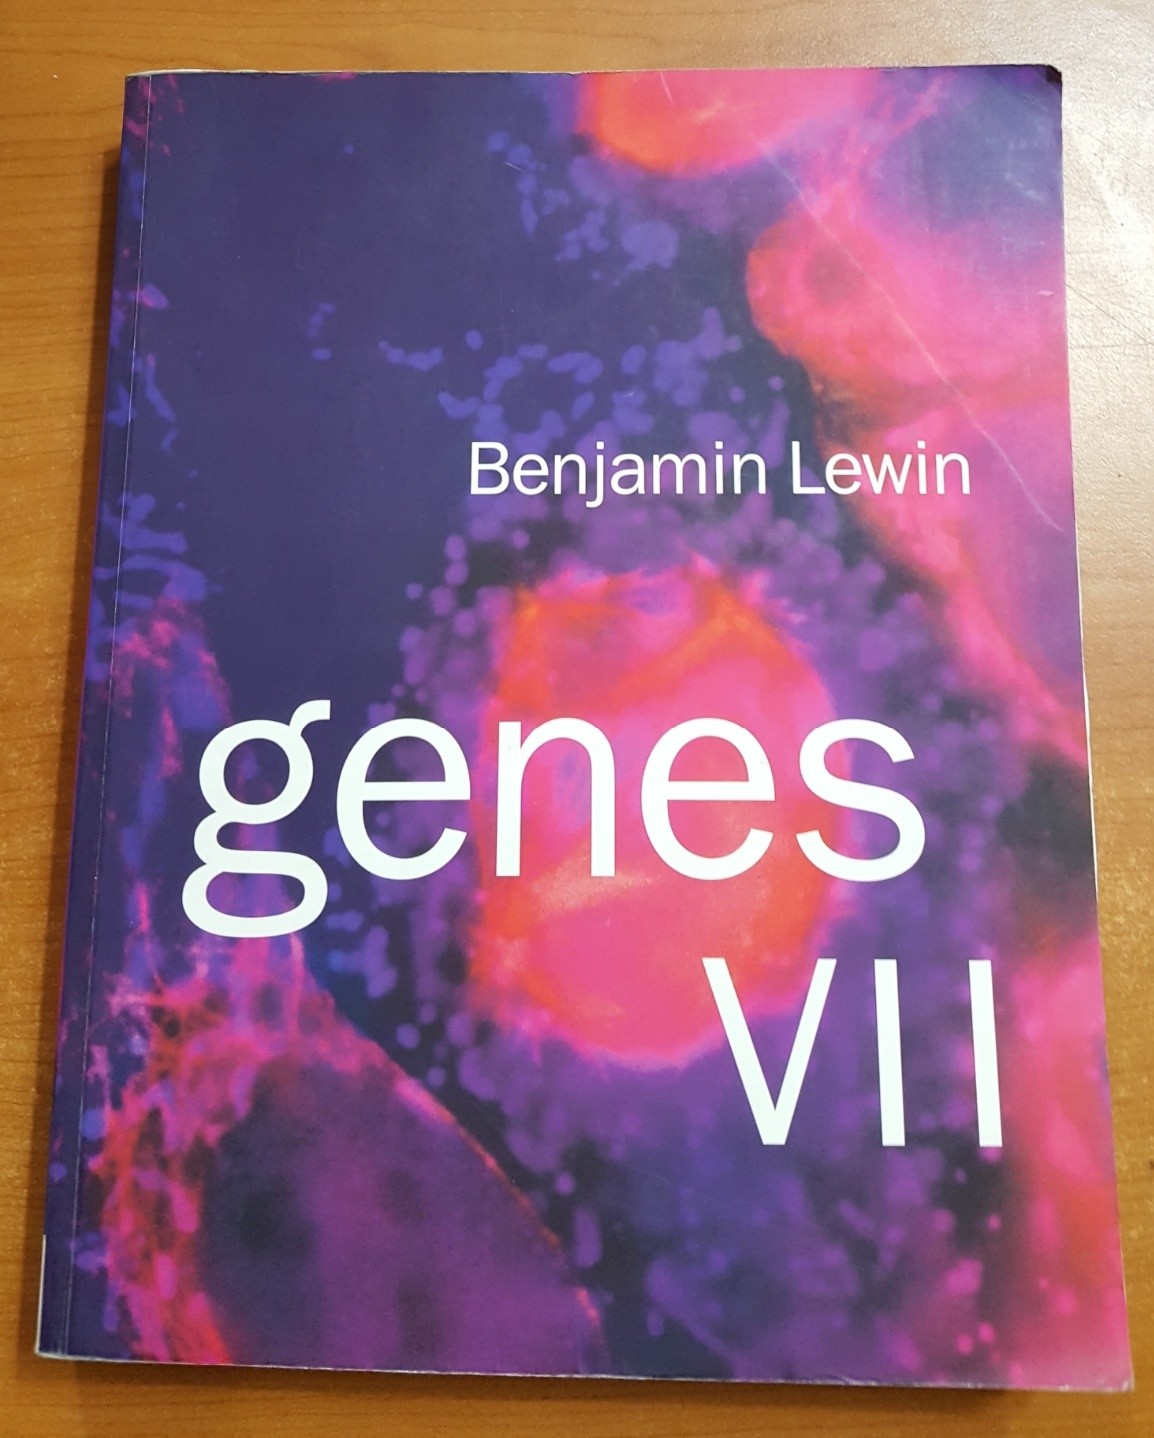 Genes VII